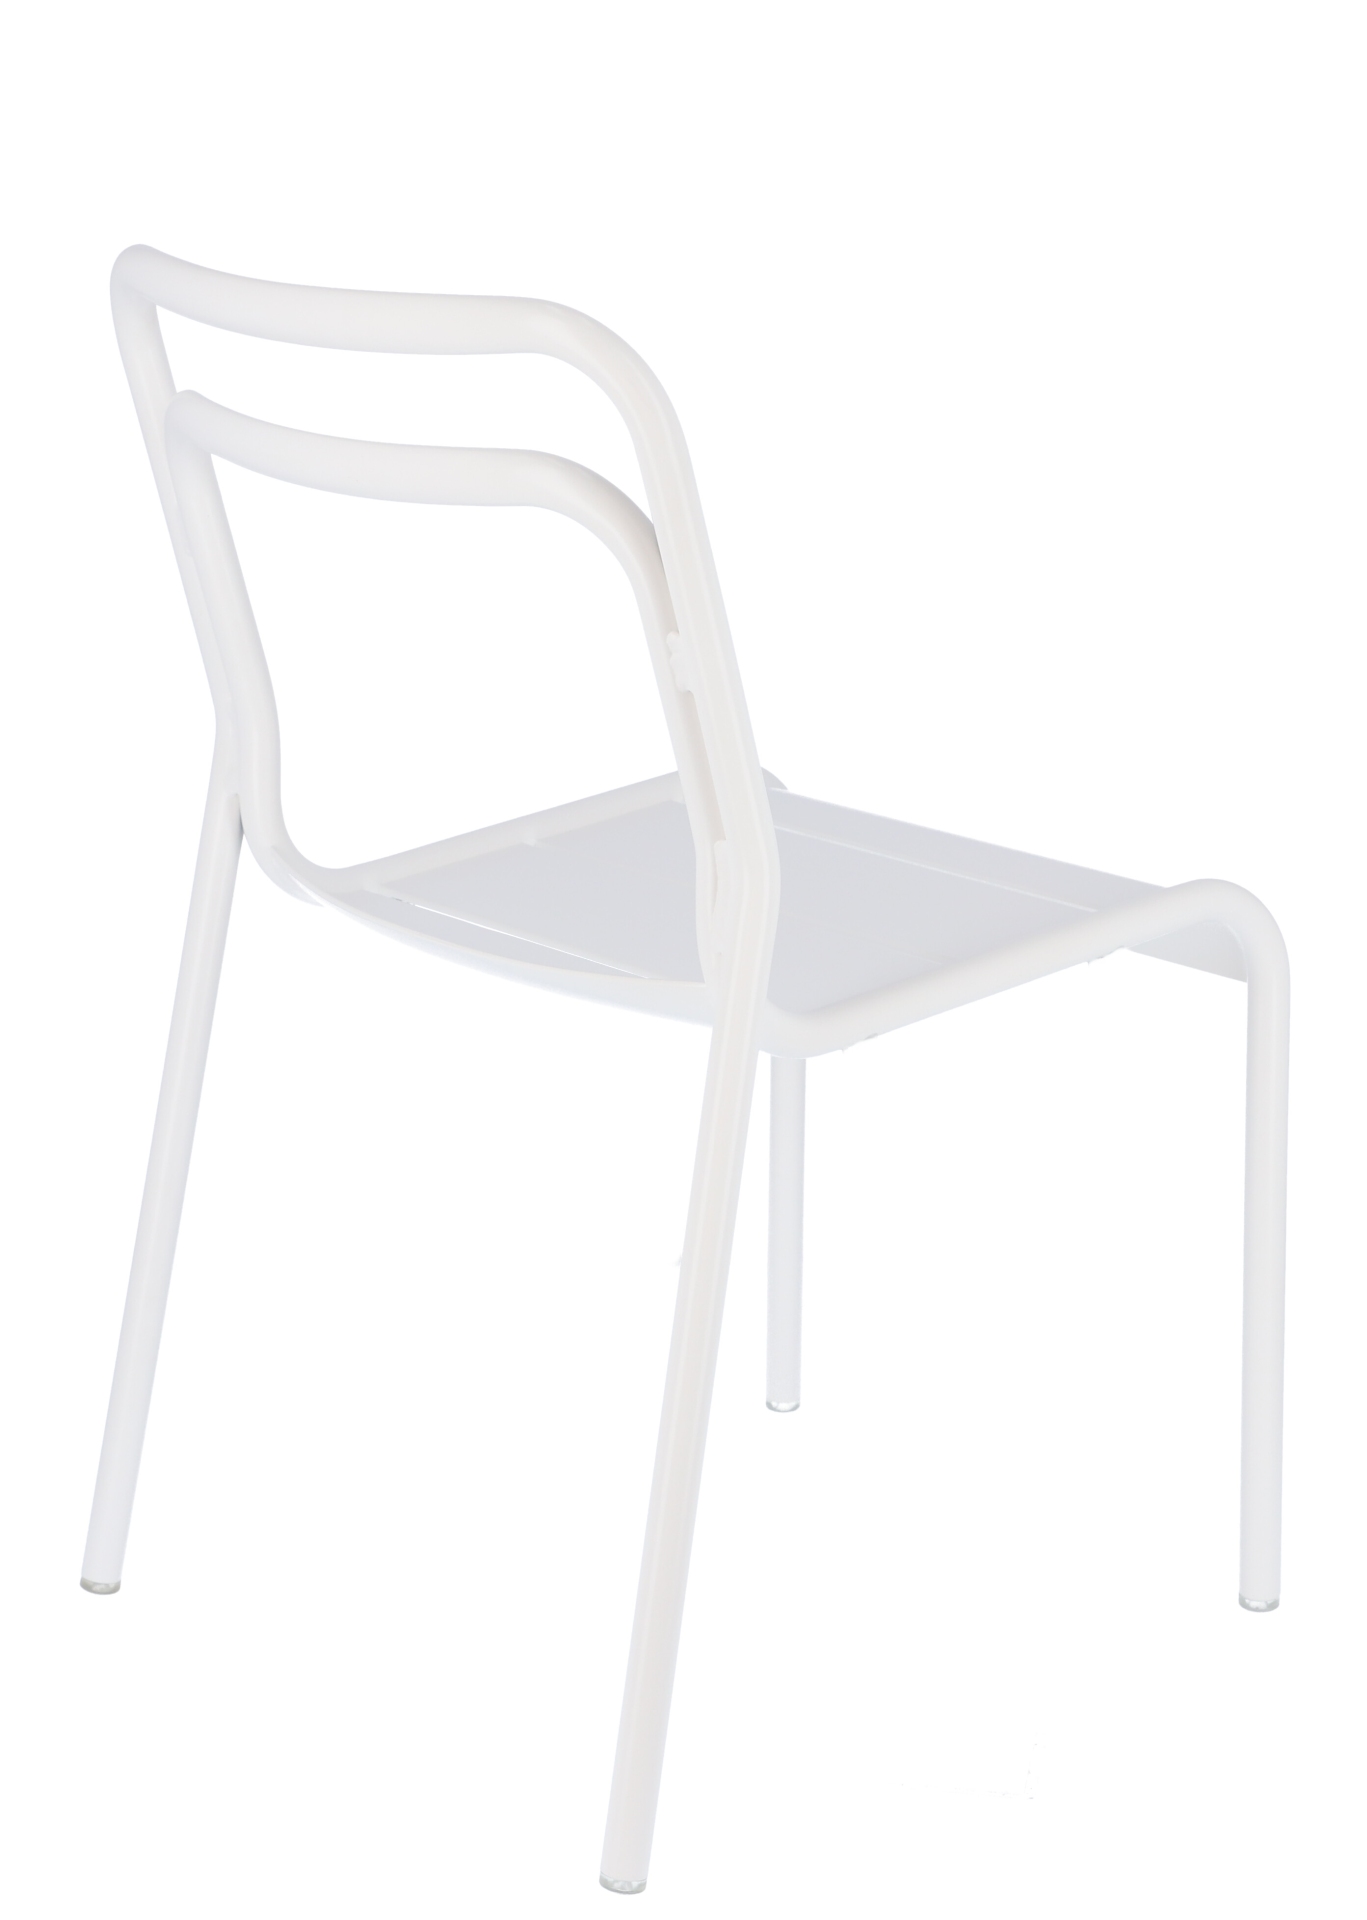 Der moderne Gartenstuhl Live wurde aus Aluminium hergestellt. Designet wurde er von der Marke Jan Kurtz. Die Farbe des Stuhls ist Weiß.